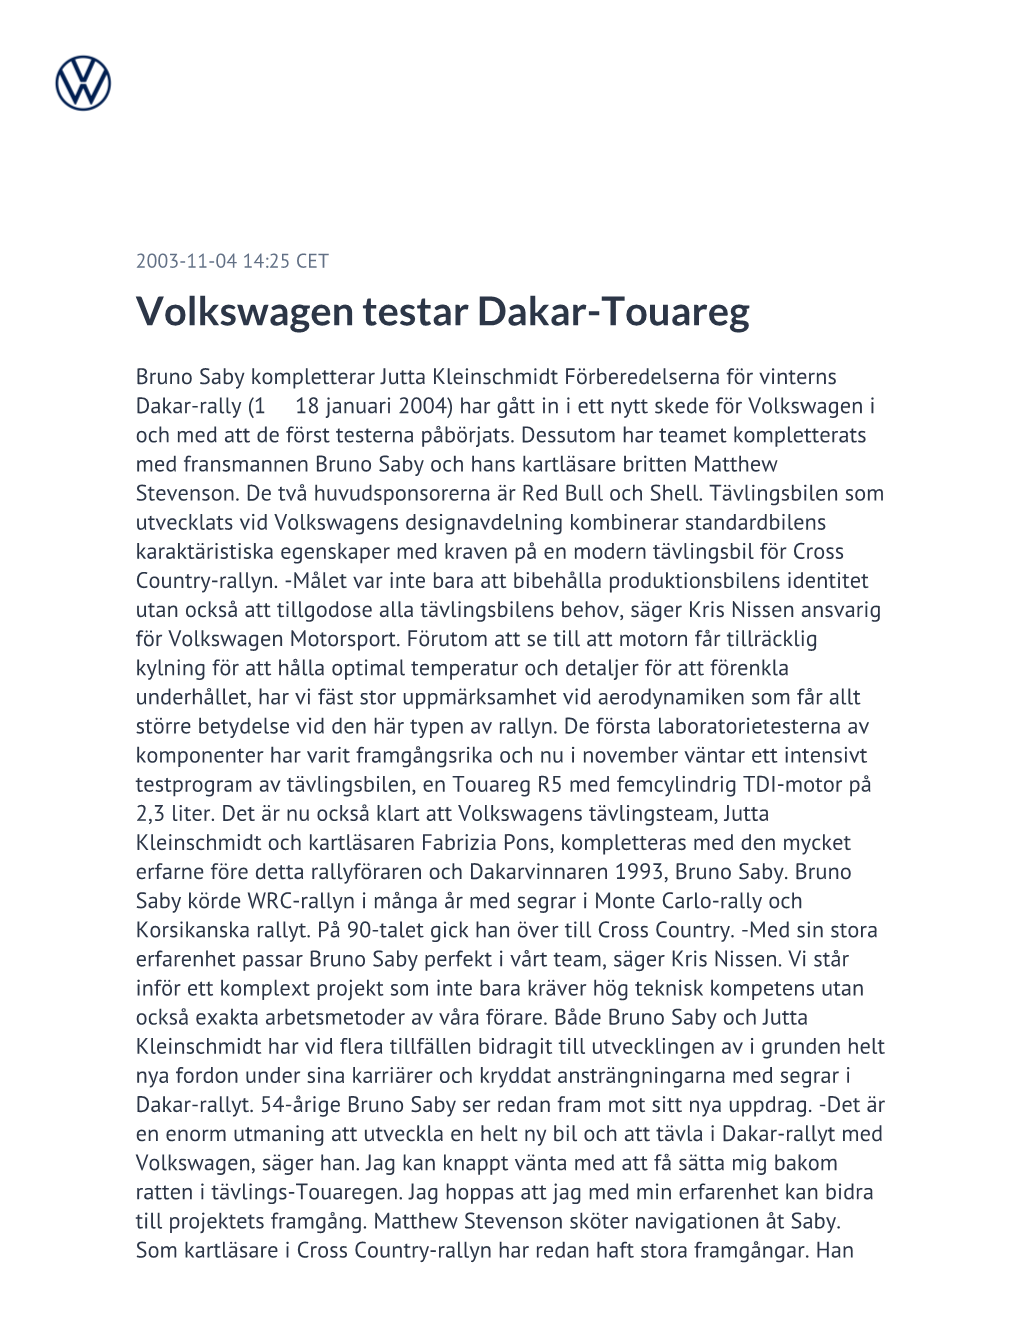 Volkswagen Testar Dakar-Touareg